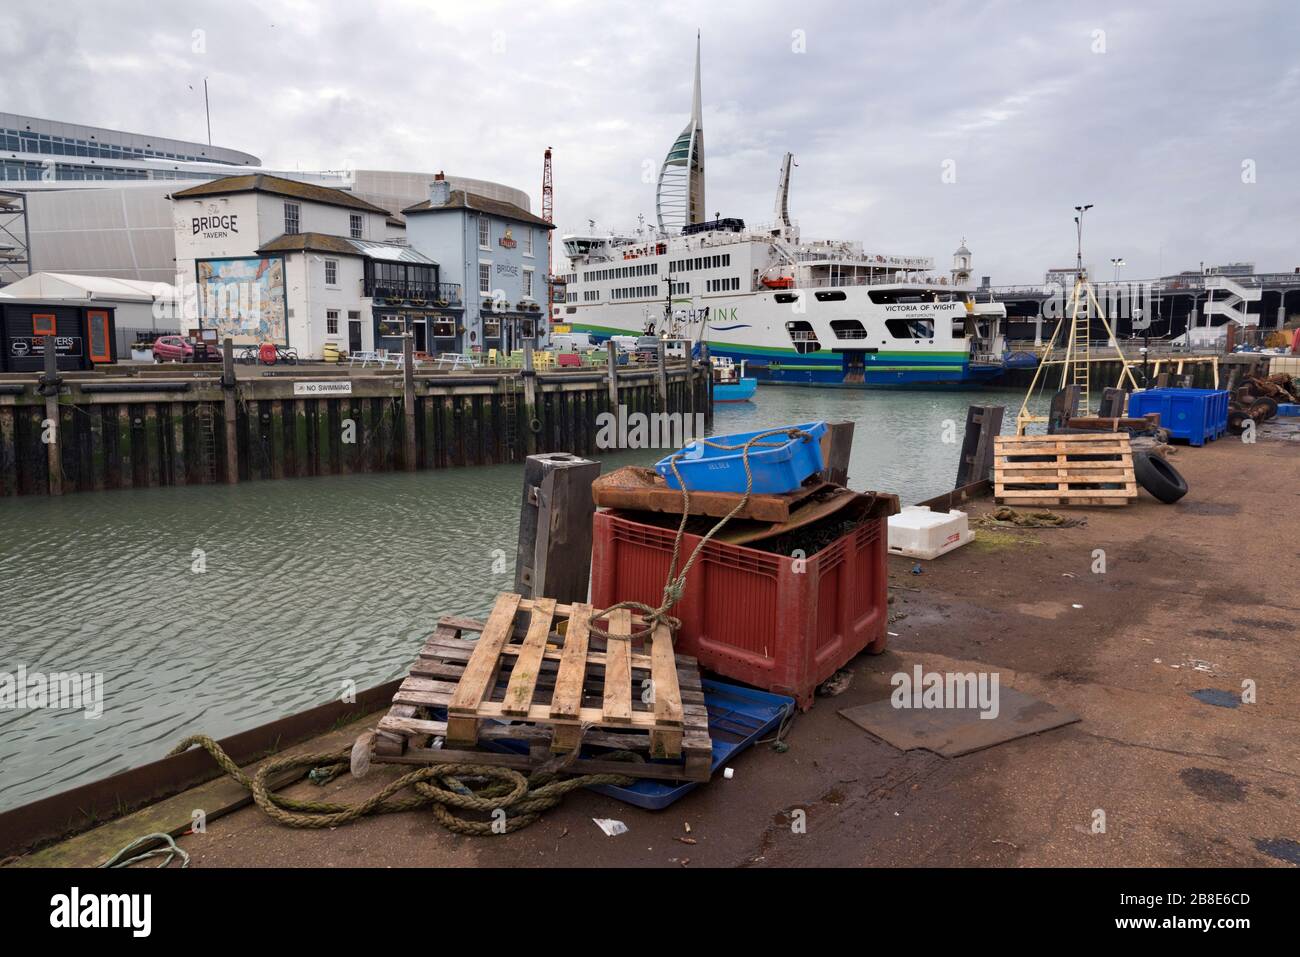 Die historische Bridge Tavern und die Insel Wight Ferry und ihr Terminal am Camber Dock, Portsmouth, Großbritannien. Vom Camber Quay Fischdock aus gesehen. Stockfoto